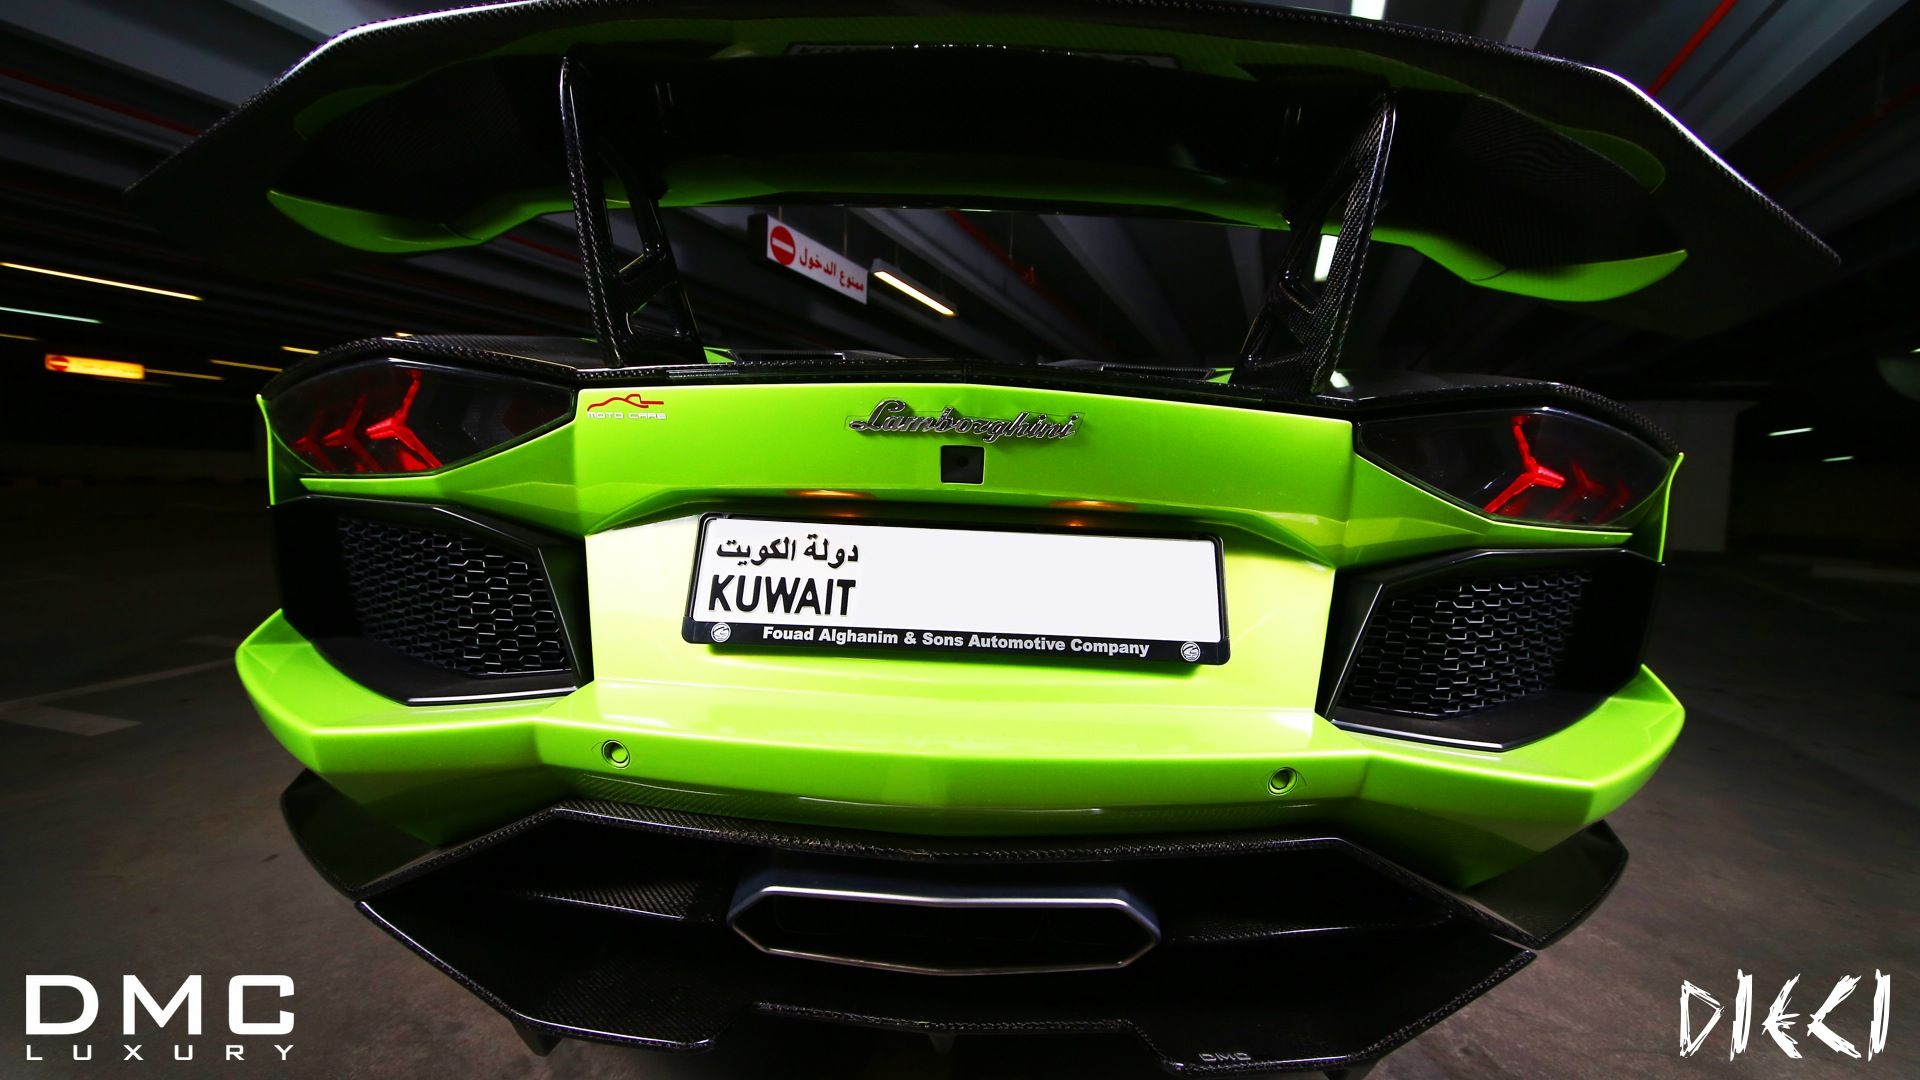 2013 Lamborghini Aventador Dieci by DMC